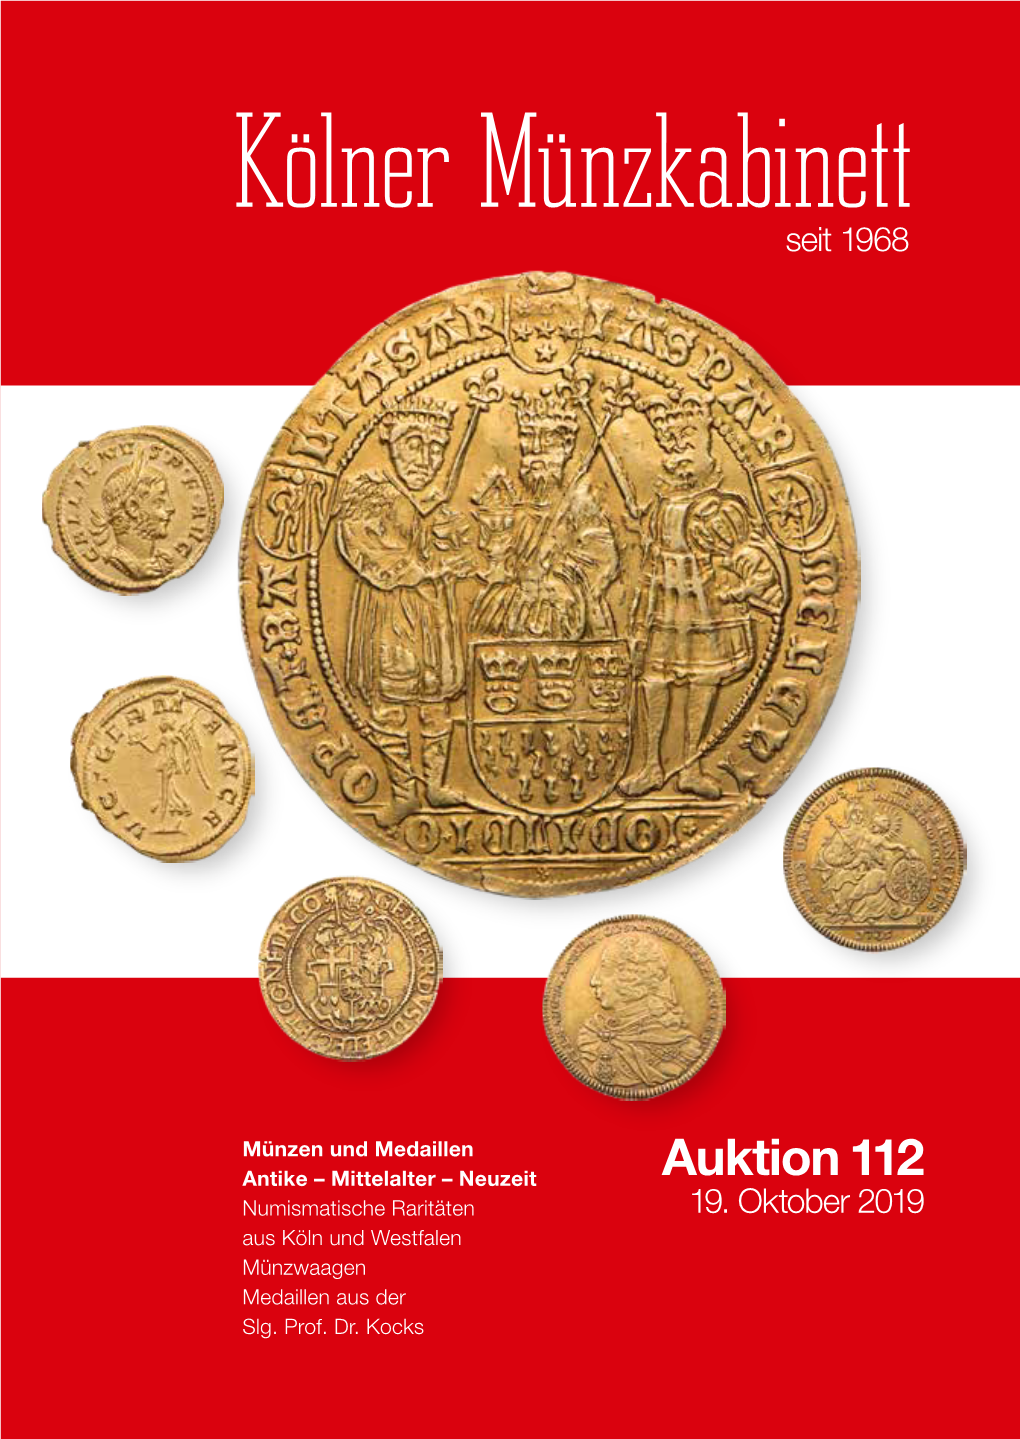 Auktion 112 Numismatische Raritäten 19